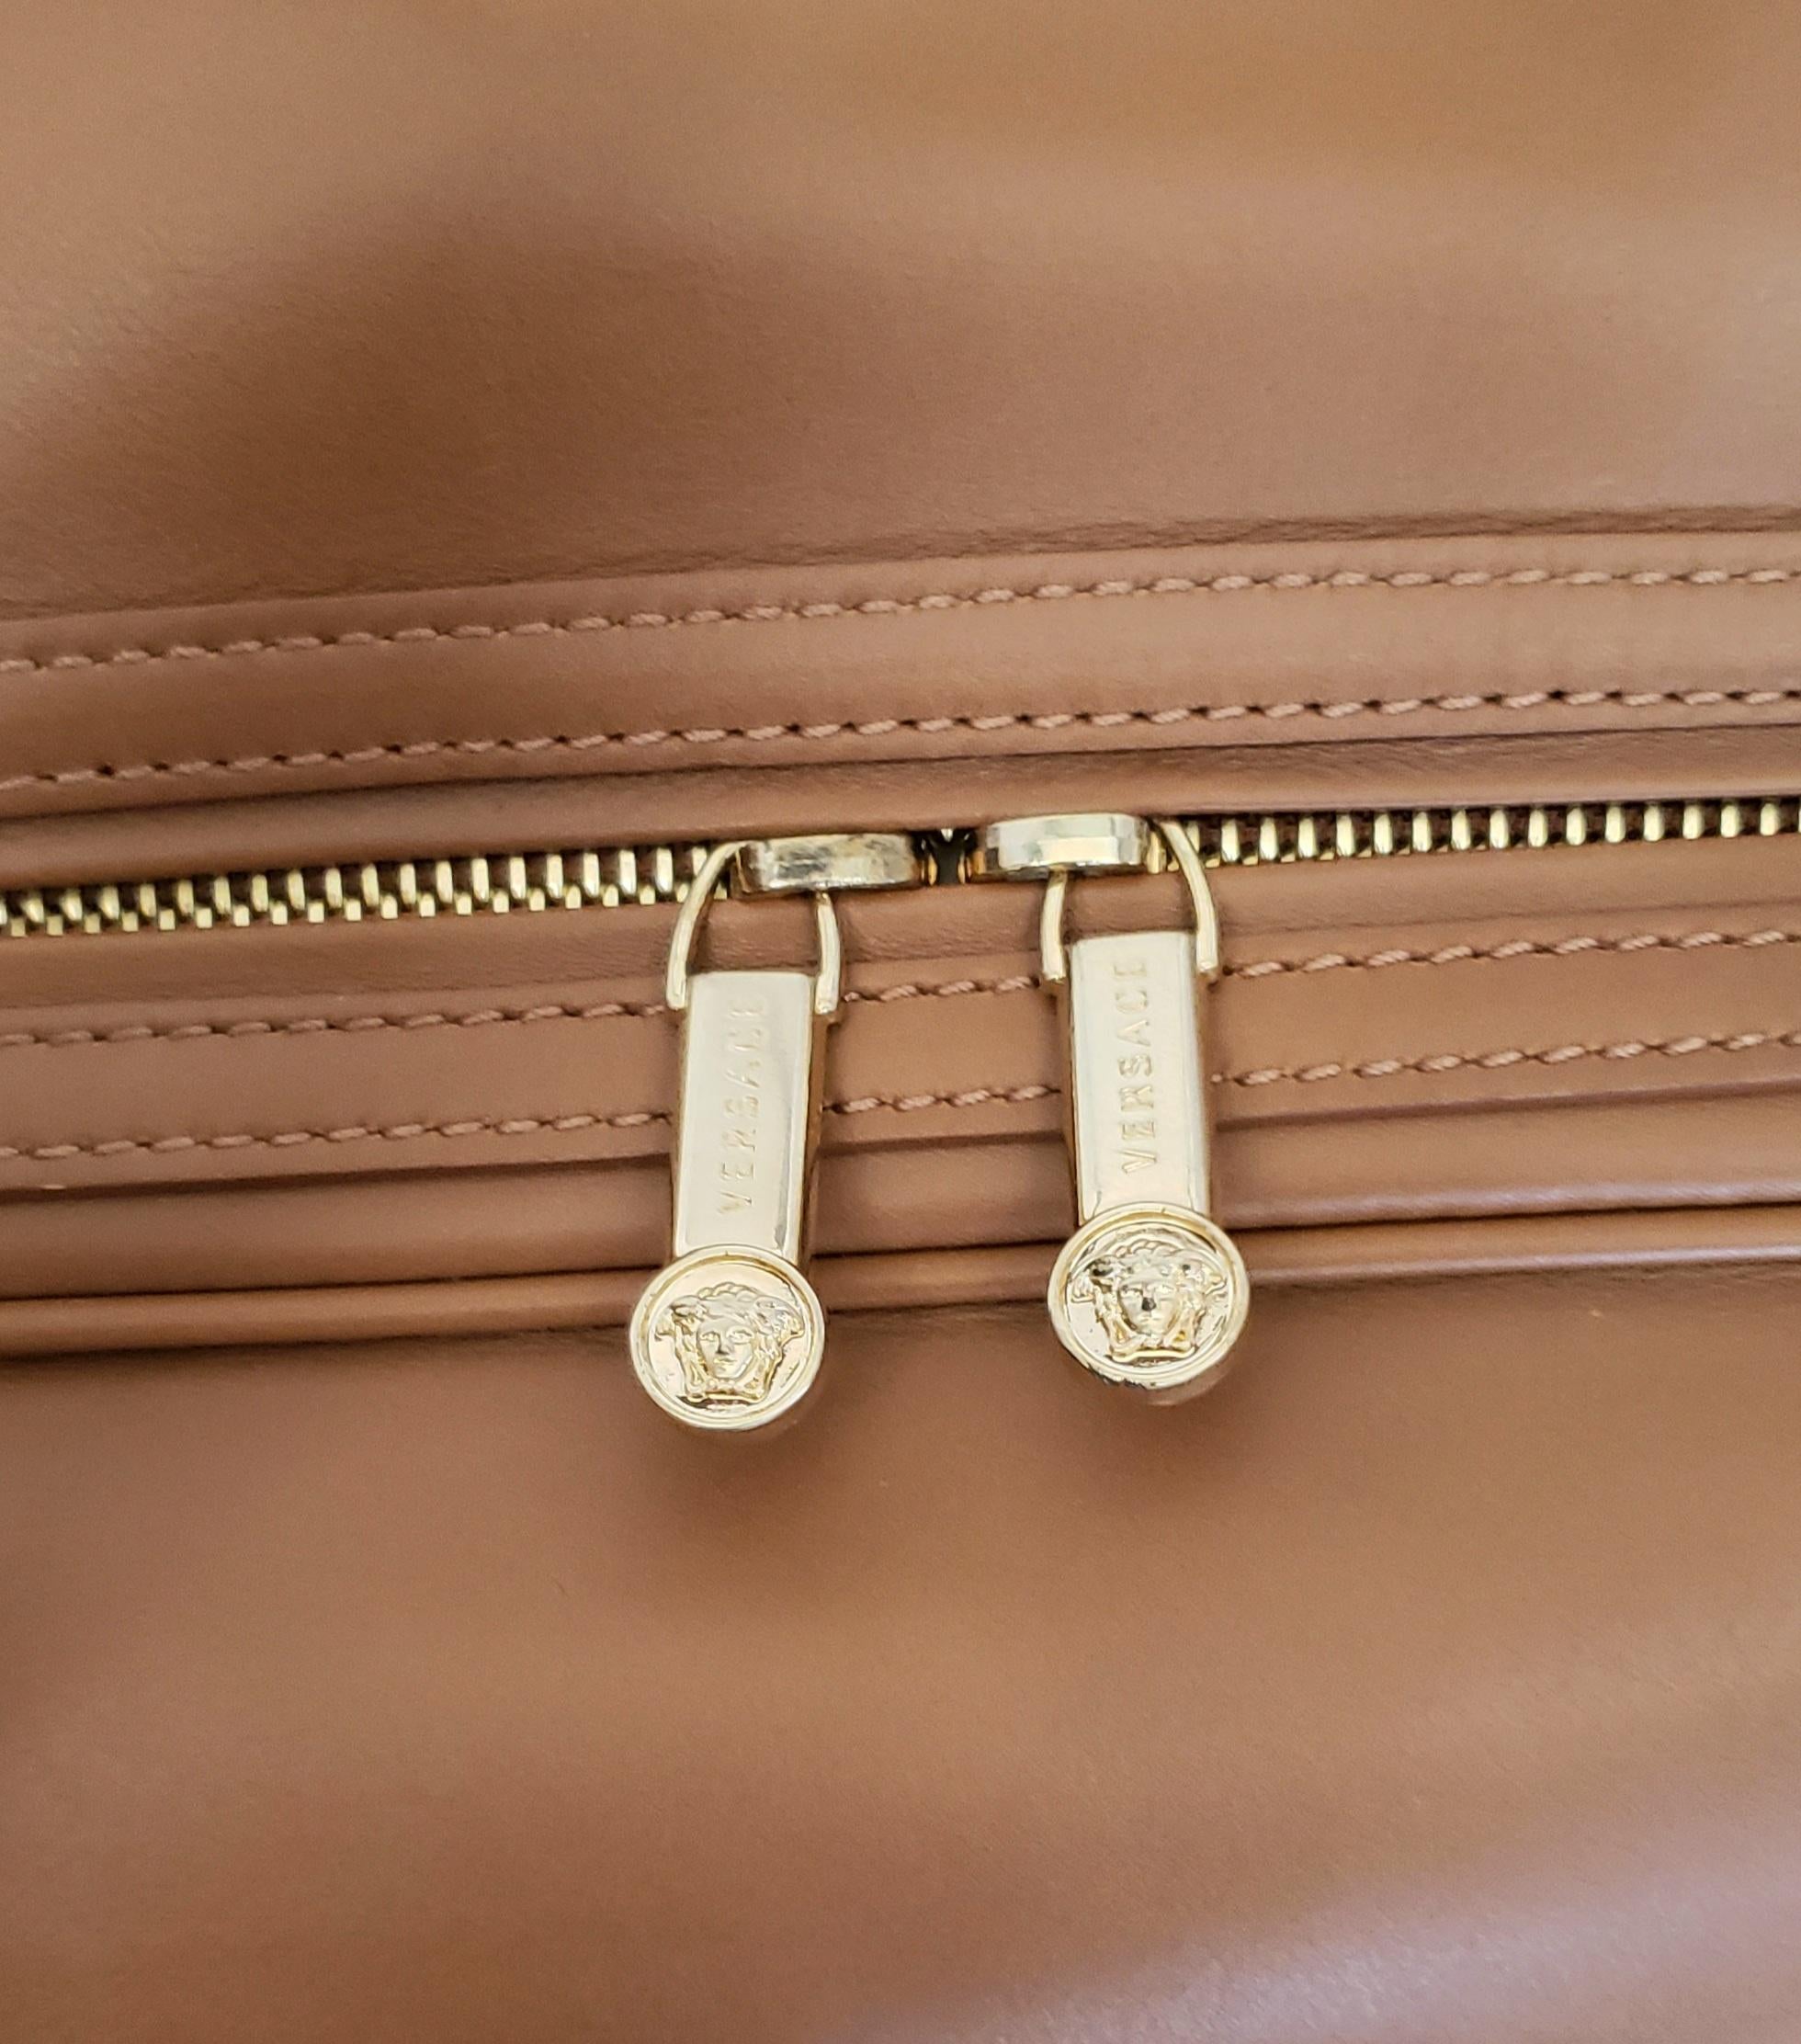 S/S 2012 Look # 27 New VERSACE men's runway brown leather travel handbag 1